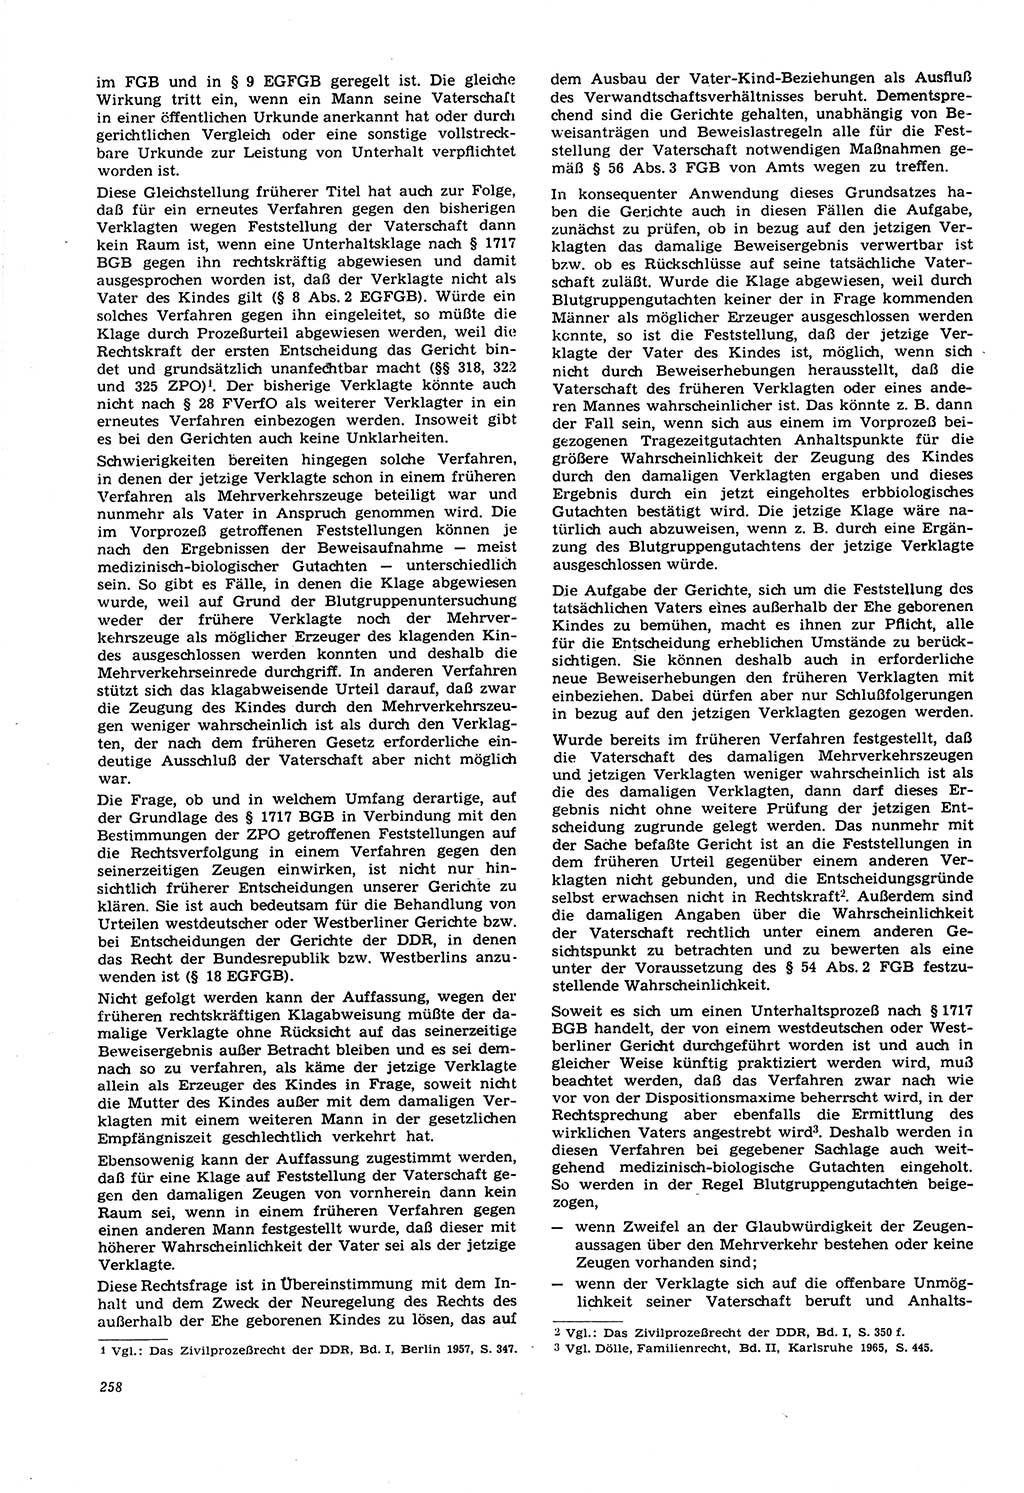 Neue Justiz (NJ), Zeitschrift für Recht und Rechtswissenschaft [Deutsche Demokratische Republik (DDR)], 21. Jahrgang 1967, Seite 258 (NJ DDR 1967, S. 258)